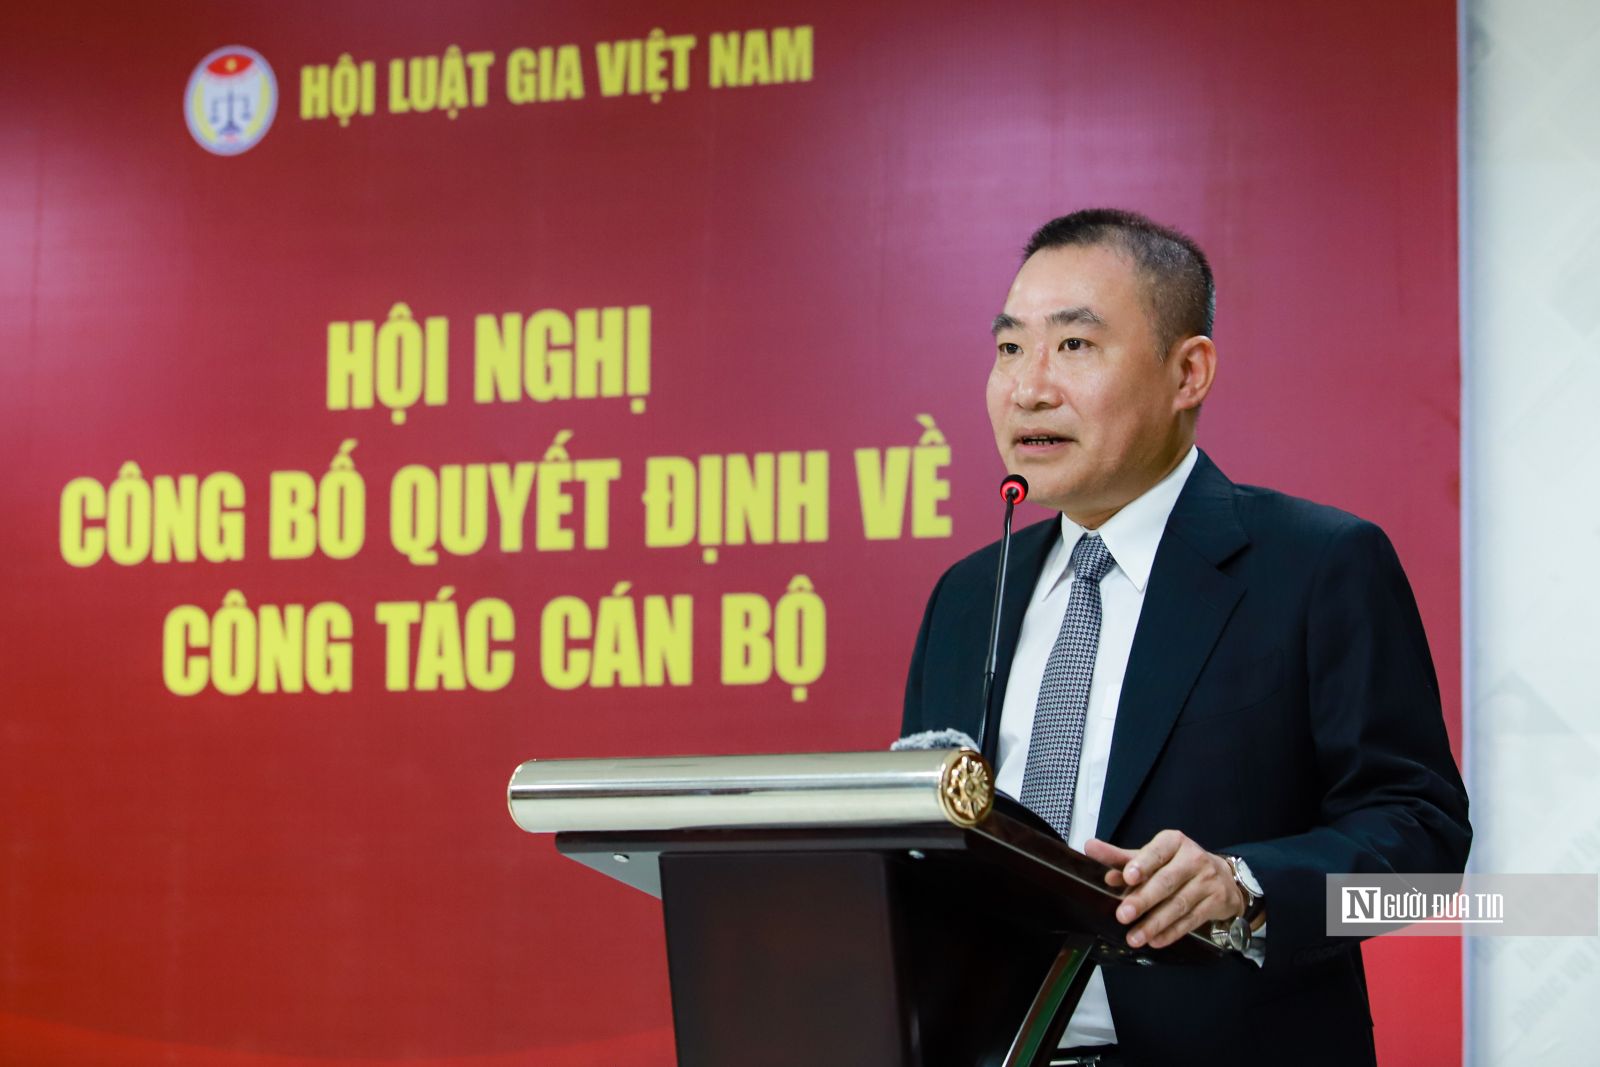 Nhà báo Phạm Quốc Huy được bổ nhiệm giữ chức Tổng biên tập Tạp chí Đời sống và Pháp luật